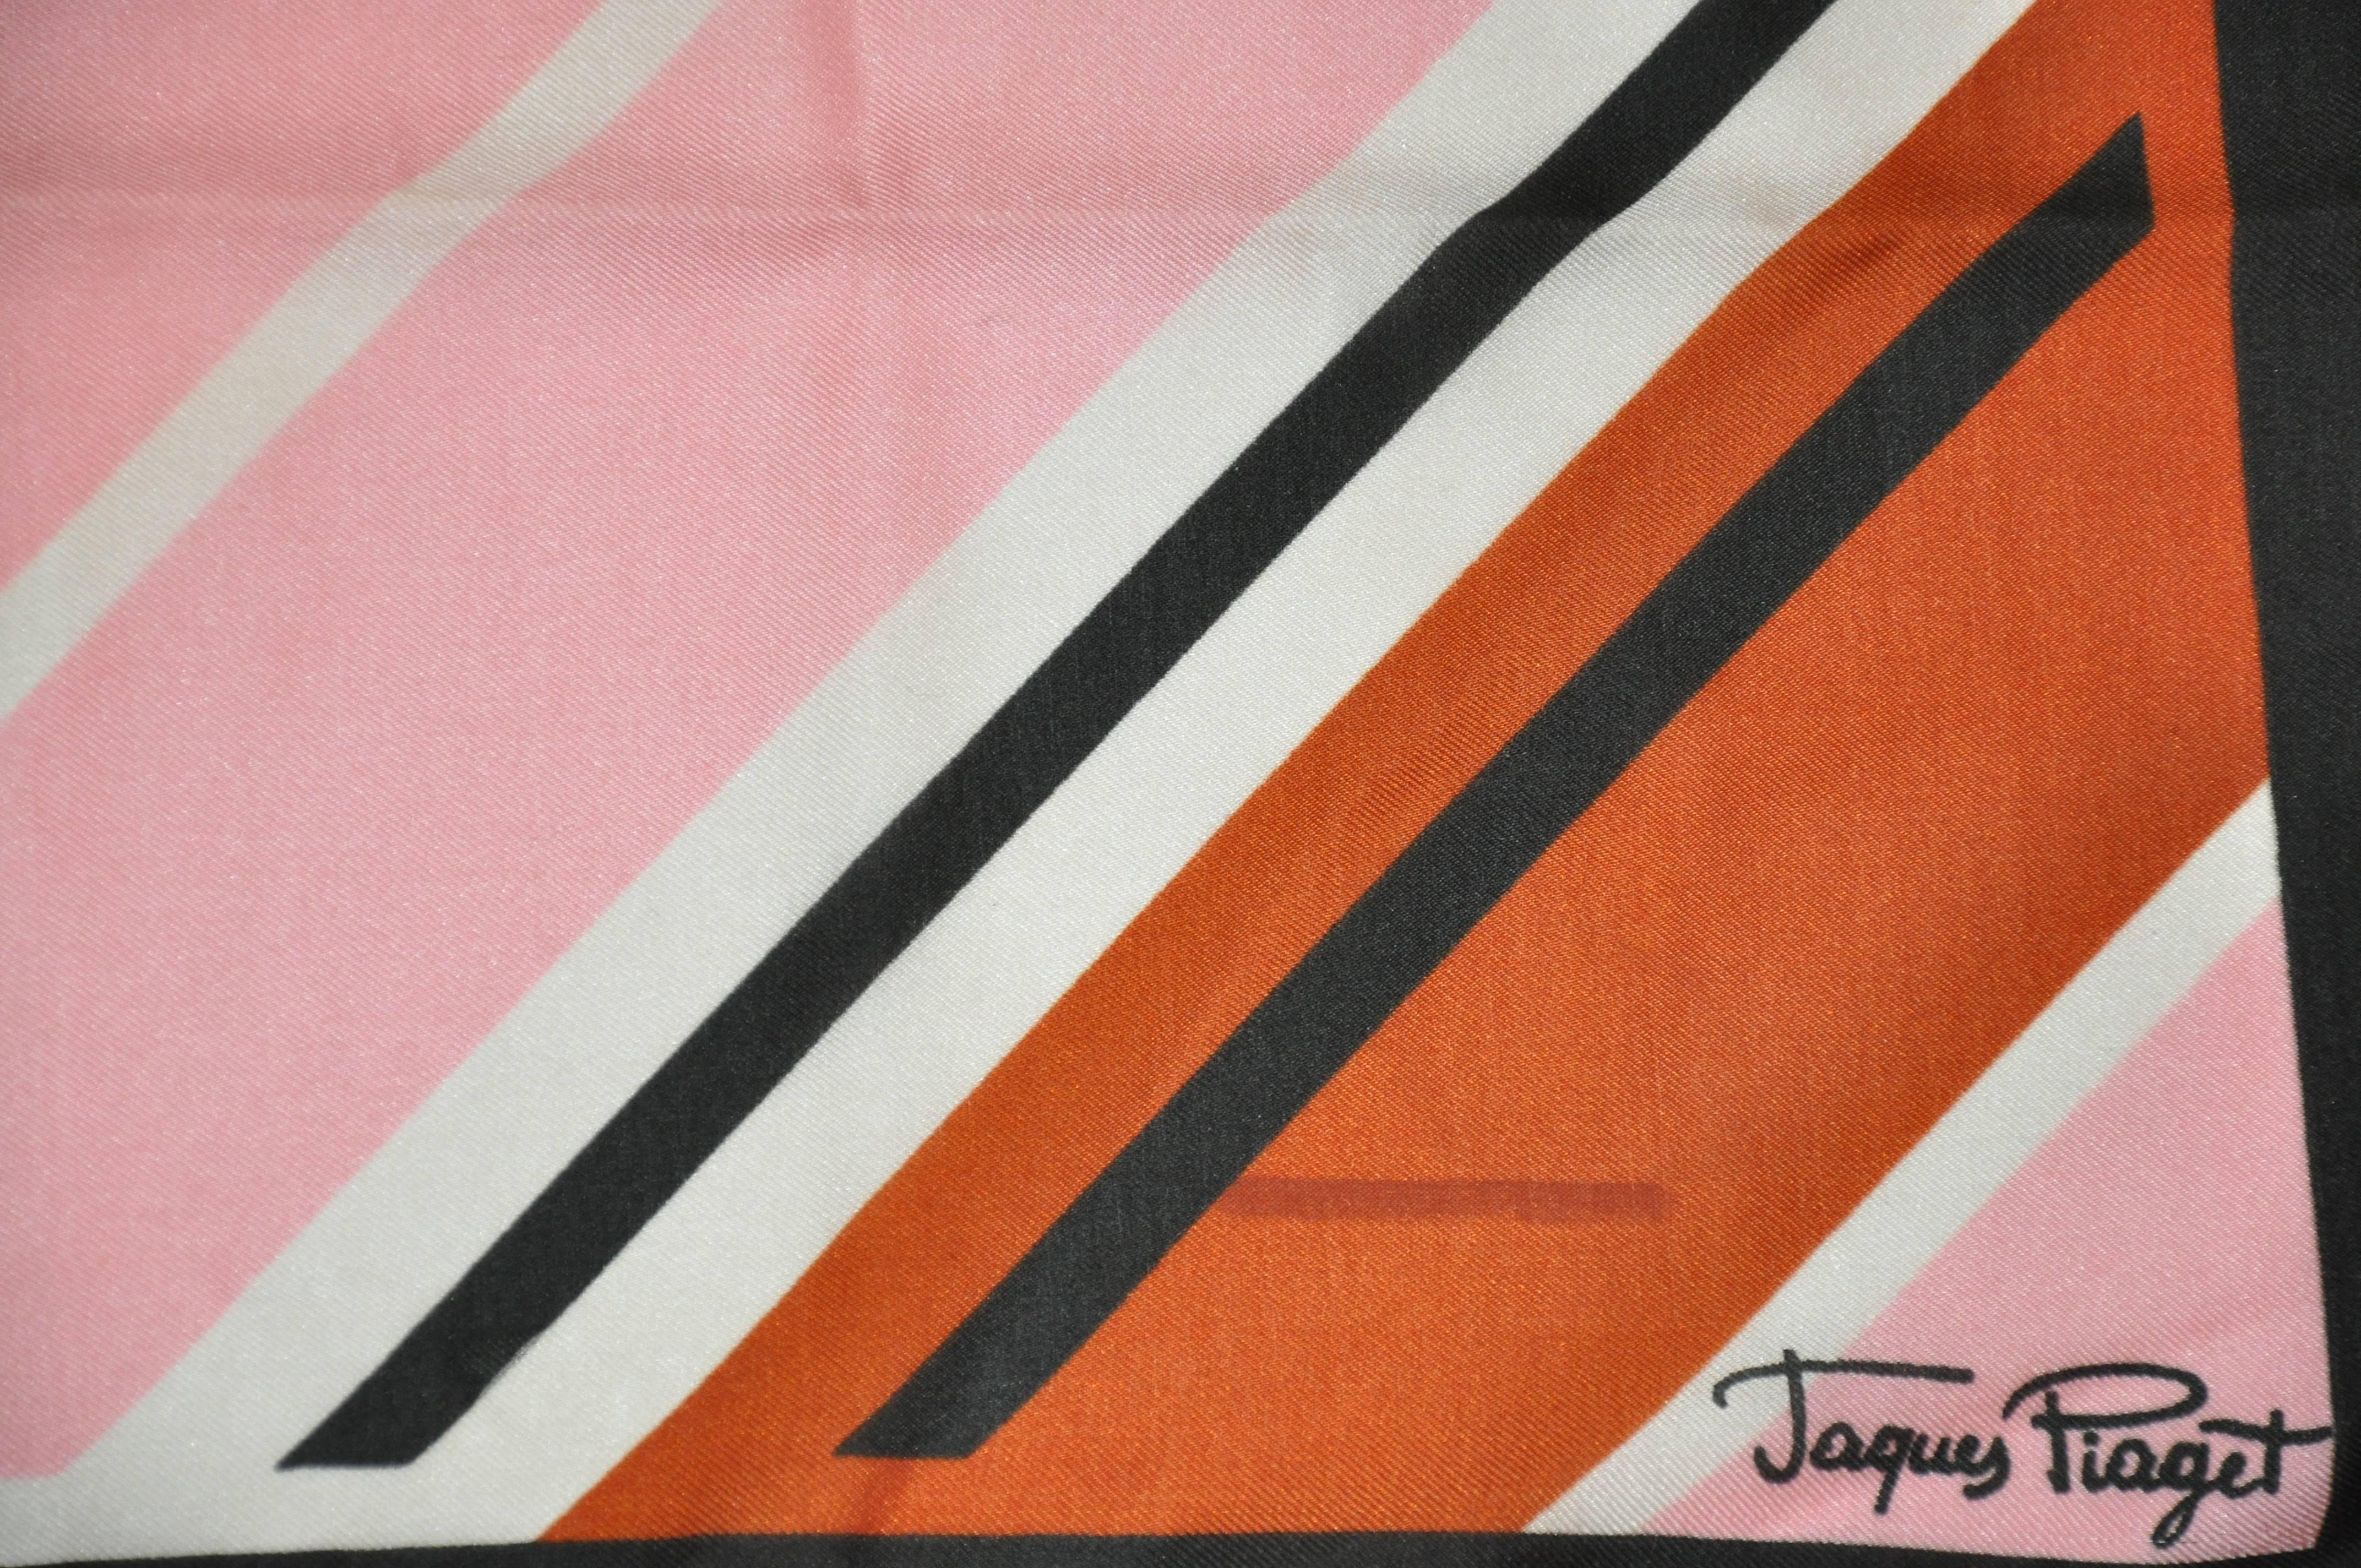        Jaques Piaget merveilleuse combinaison de multi-color multi-stripe entouré d'une bordure brune coco foulard mesure 26 1/2 pouces par 26 pouces. Fabriqué en Italie en acétate.